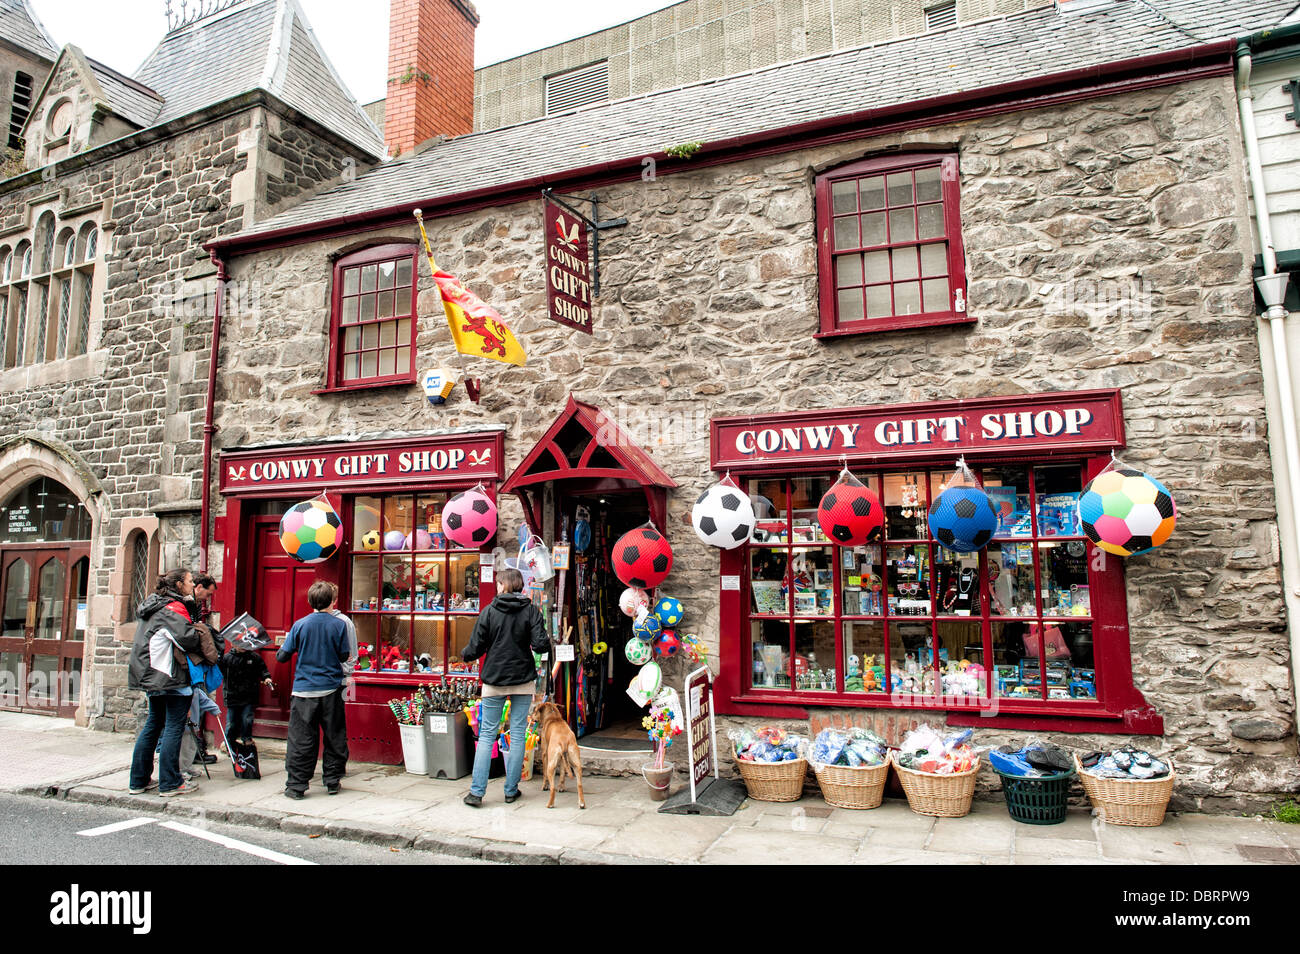 CONWY, Galles - negozi su Castle Street, una delle vie principali di Conwy che corre parallela al lungomare. Conwy è una città storica fortificata più famoso per Conwy Castle, che sorge sul lato meridionale di Castle Street. Foto Stock